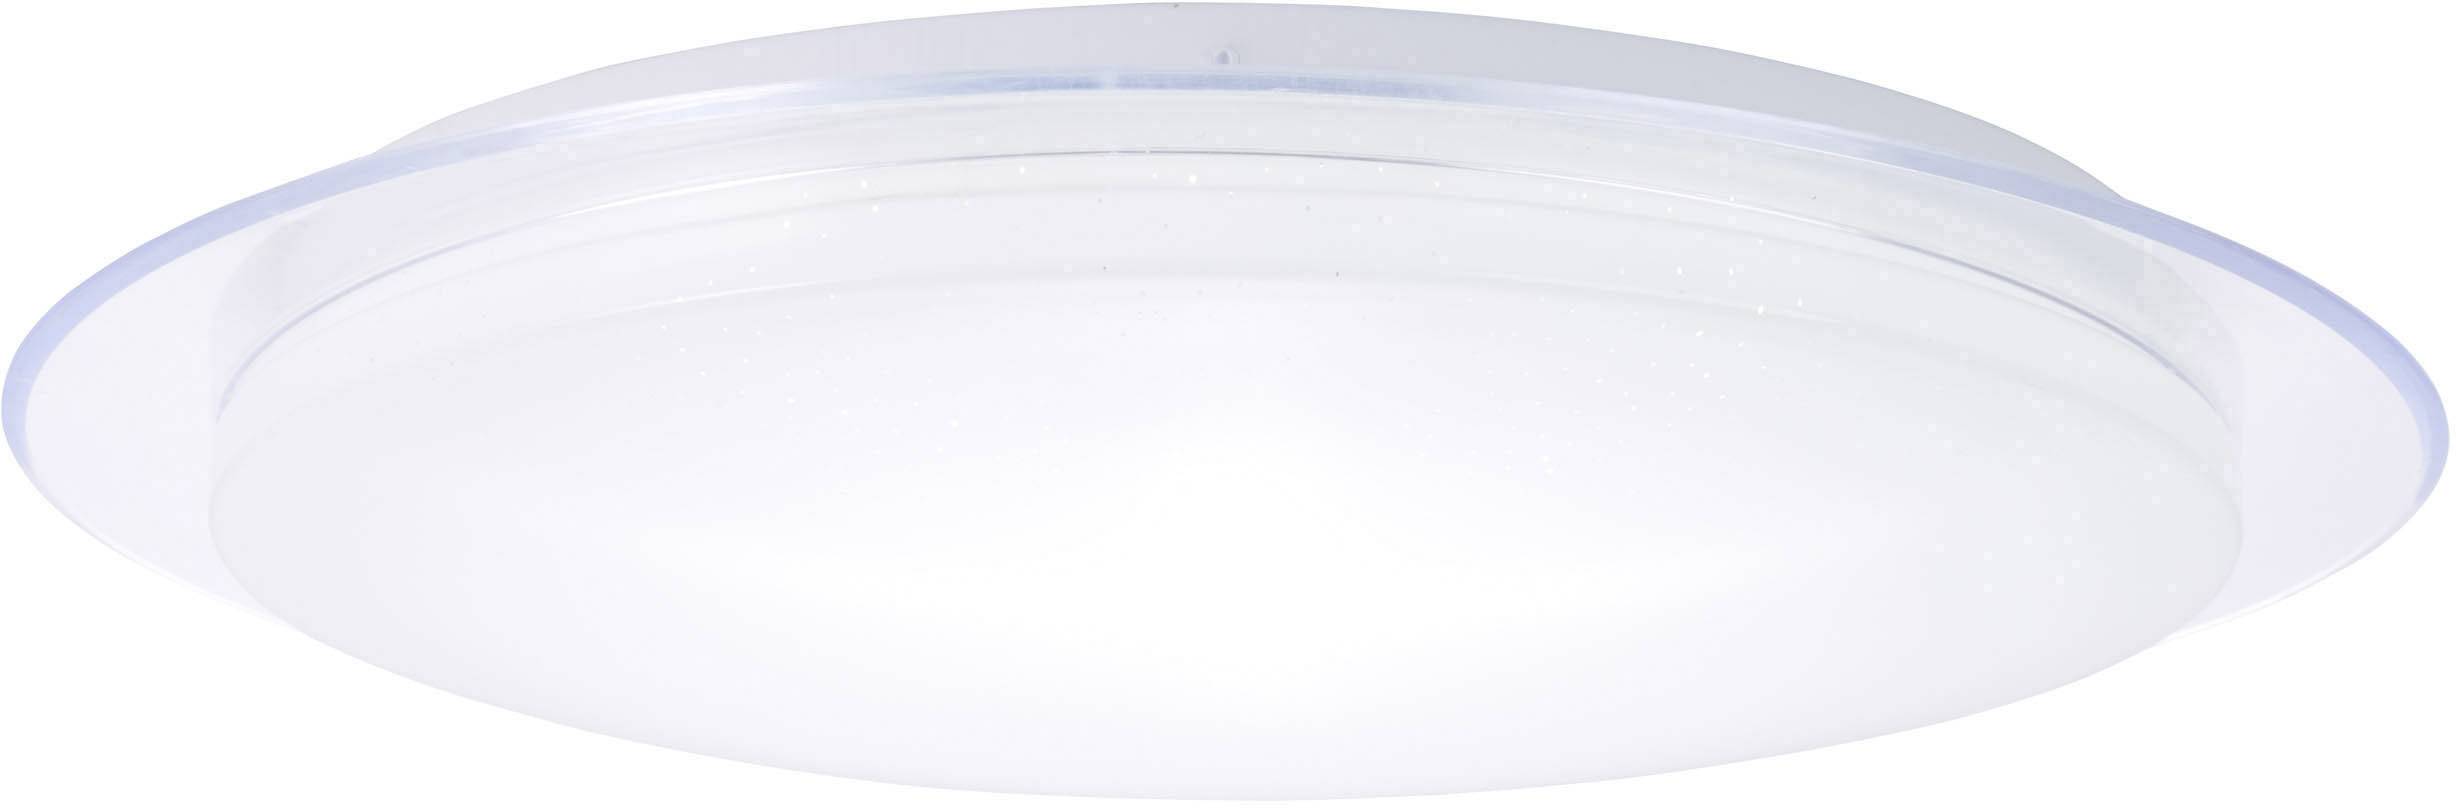 BRILLIANT LED-Bad-Deckenleuchte 40 W Warm-Weiß, Neutral-Weiß, Tageslicht-Weiß Brilliant G96933A05